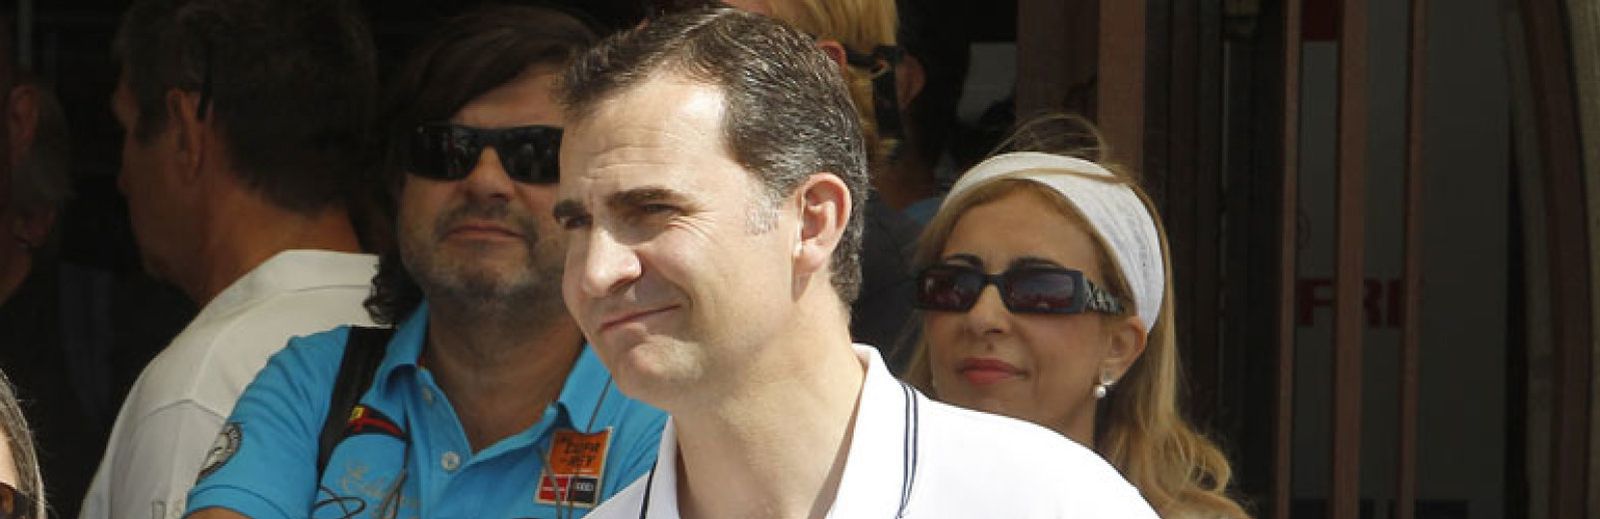 Foto: El príncipe Felipe llega a Mallorca con sus hijas pero sin Letizia